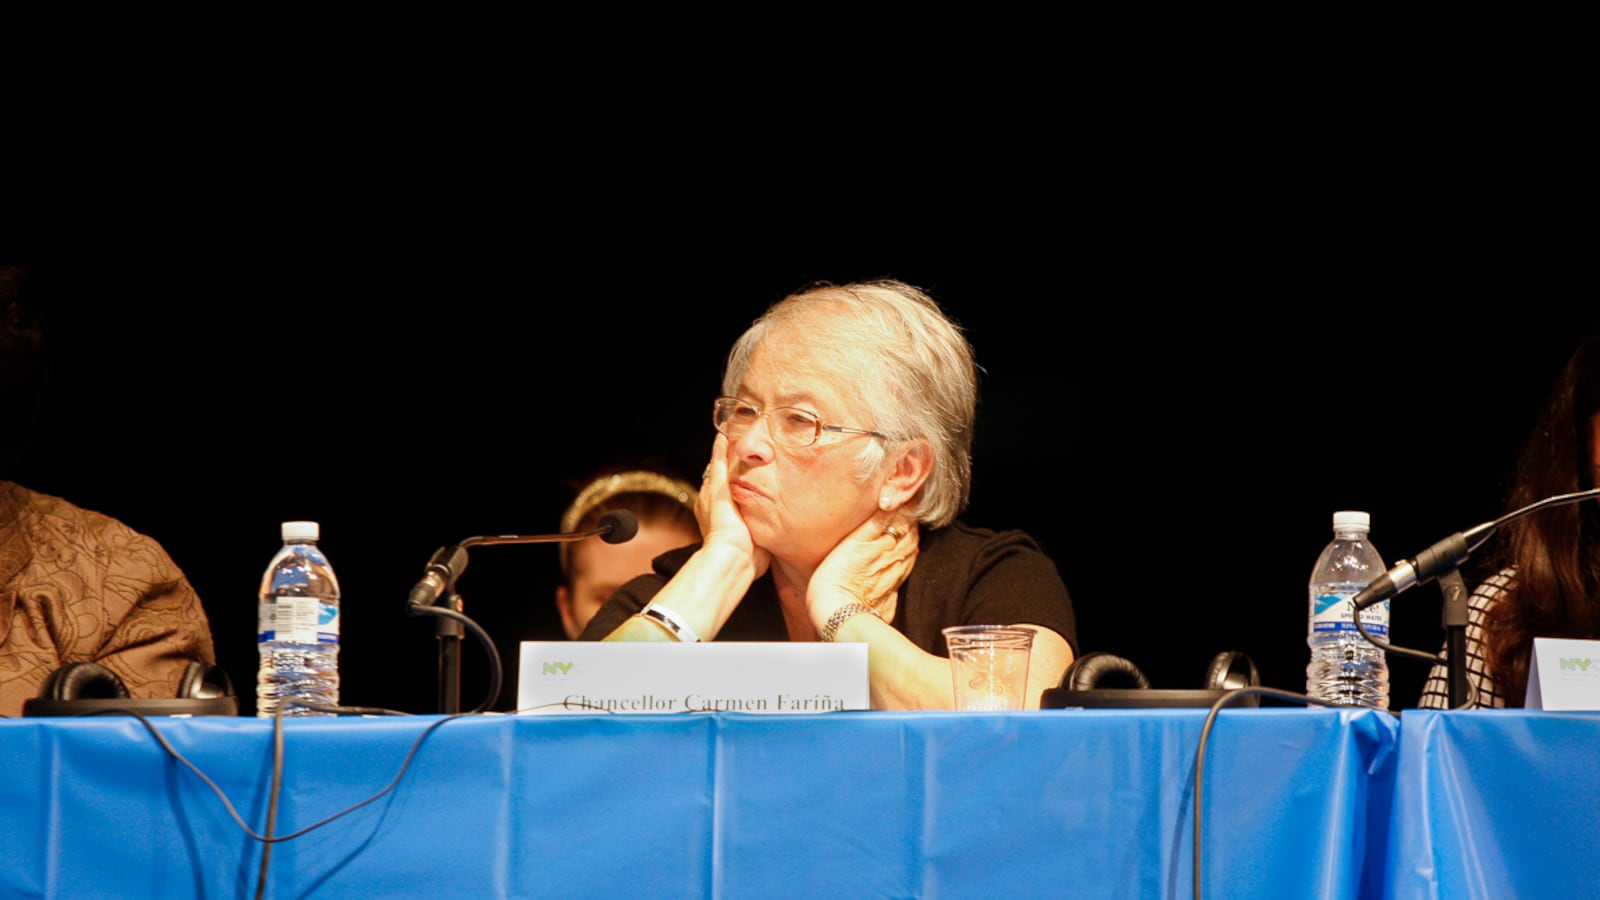 Chancellor Carmen Fariña at a PEP meeting.